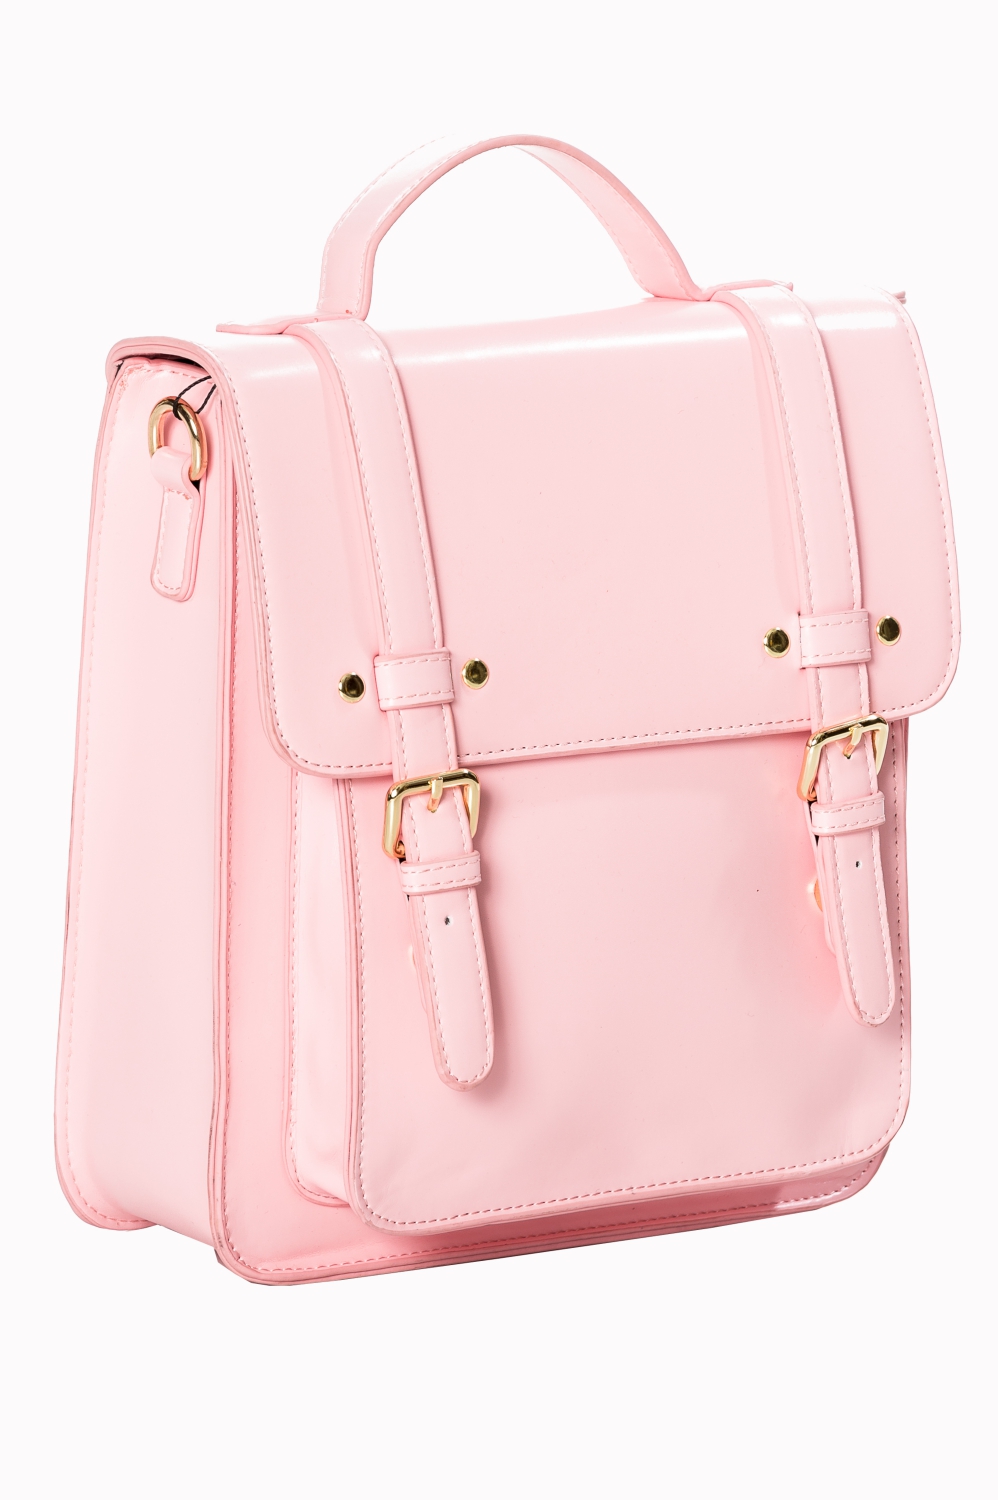 Banned - Counting Stars Handbag - Pink